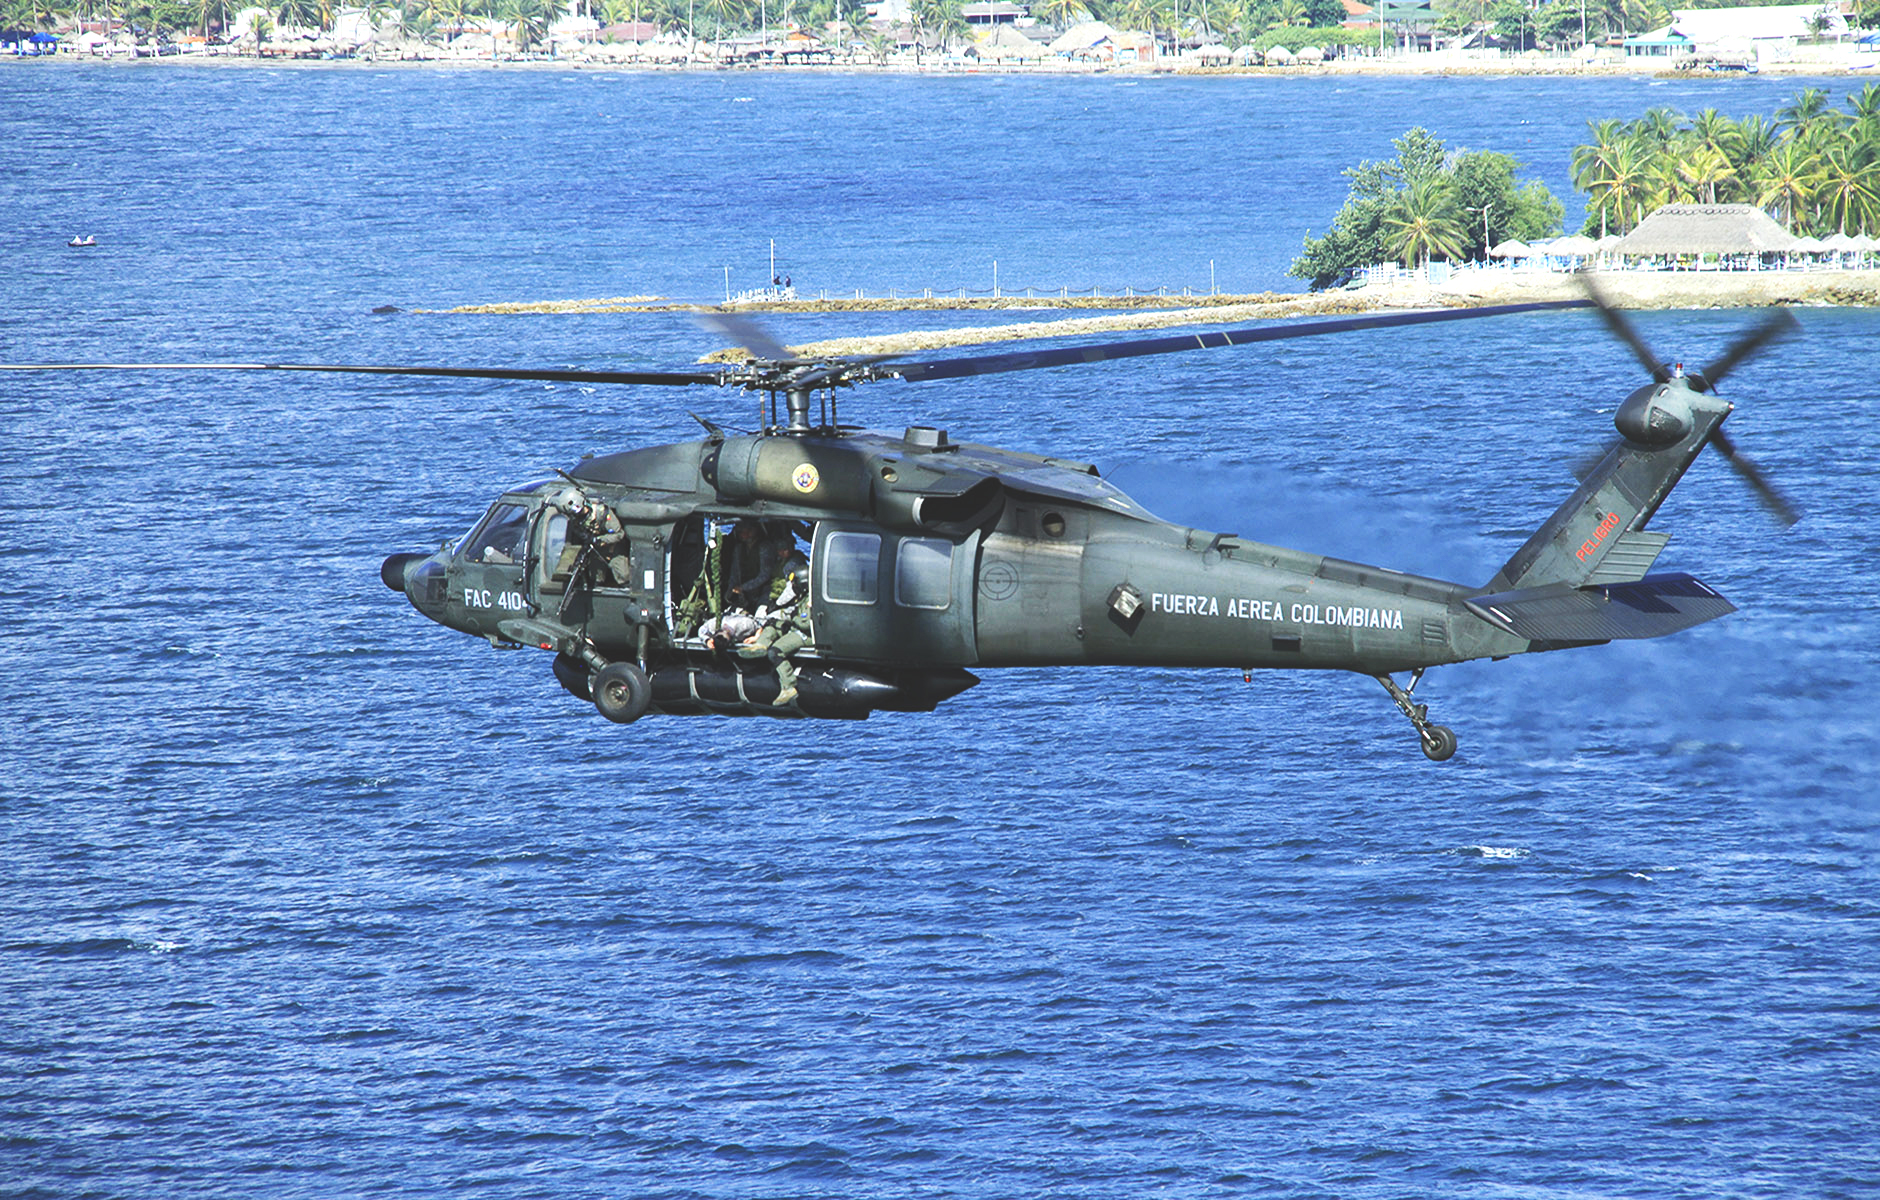 Black Hawk, Arpía IV, tiene la capacidad de realizar maniobras en aguas abiertas en ambientes operacionales diversos, bajo estrictos parámetros de seguridad, las 24 horas al día.